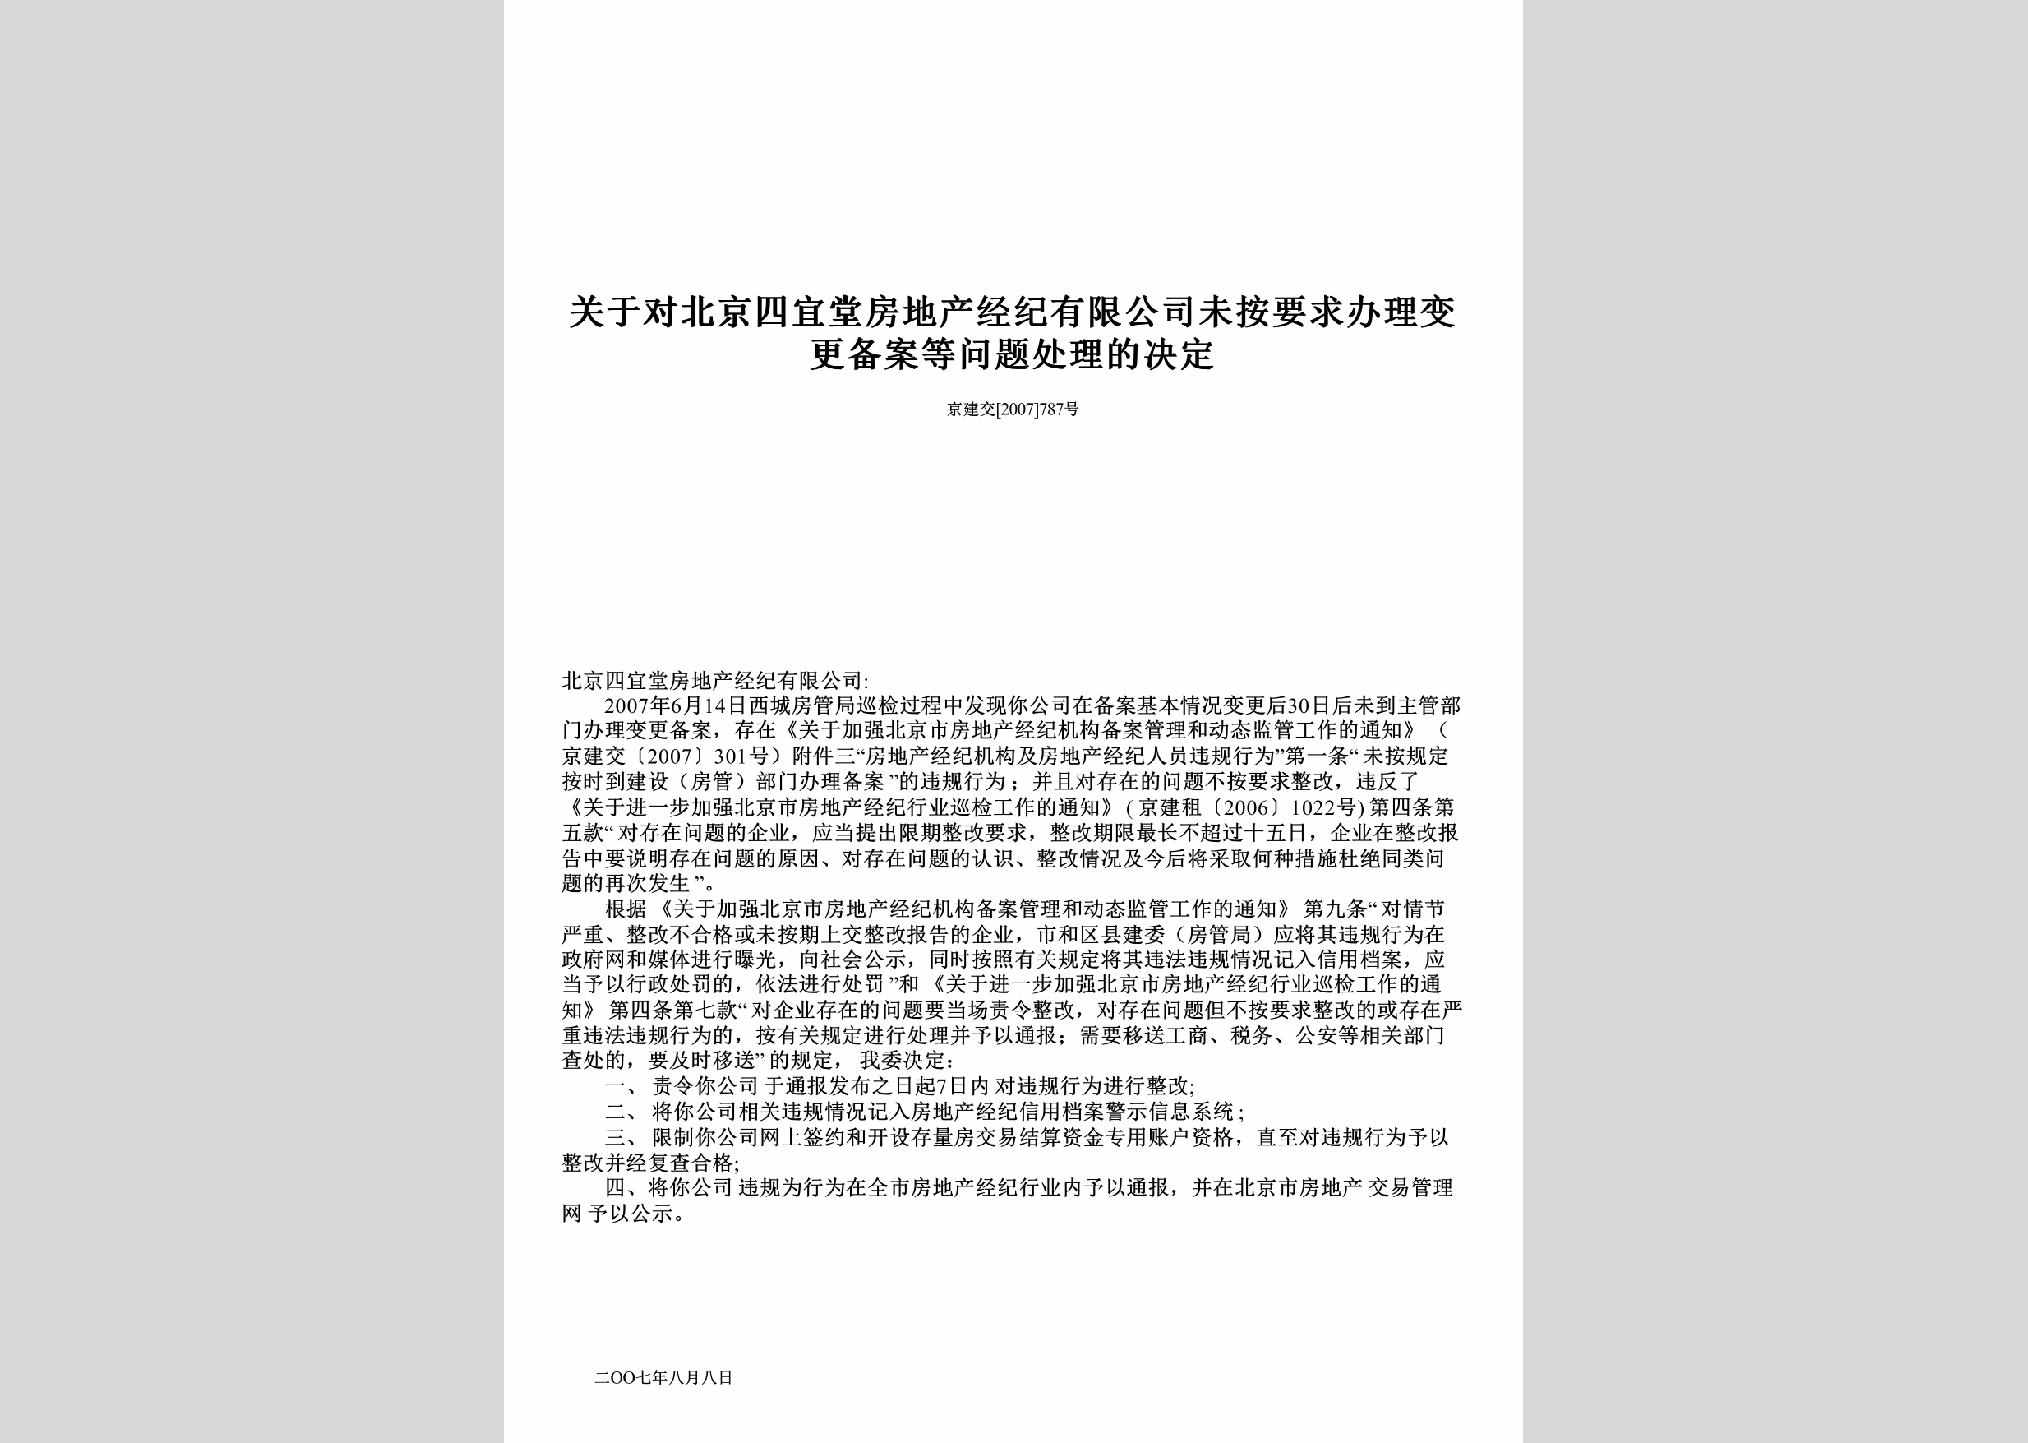 京建租[2005]908号：关于对北京佰家房地产经纪有限公司违规行为进行处理的通报